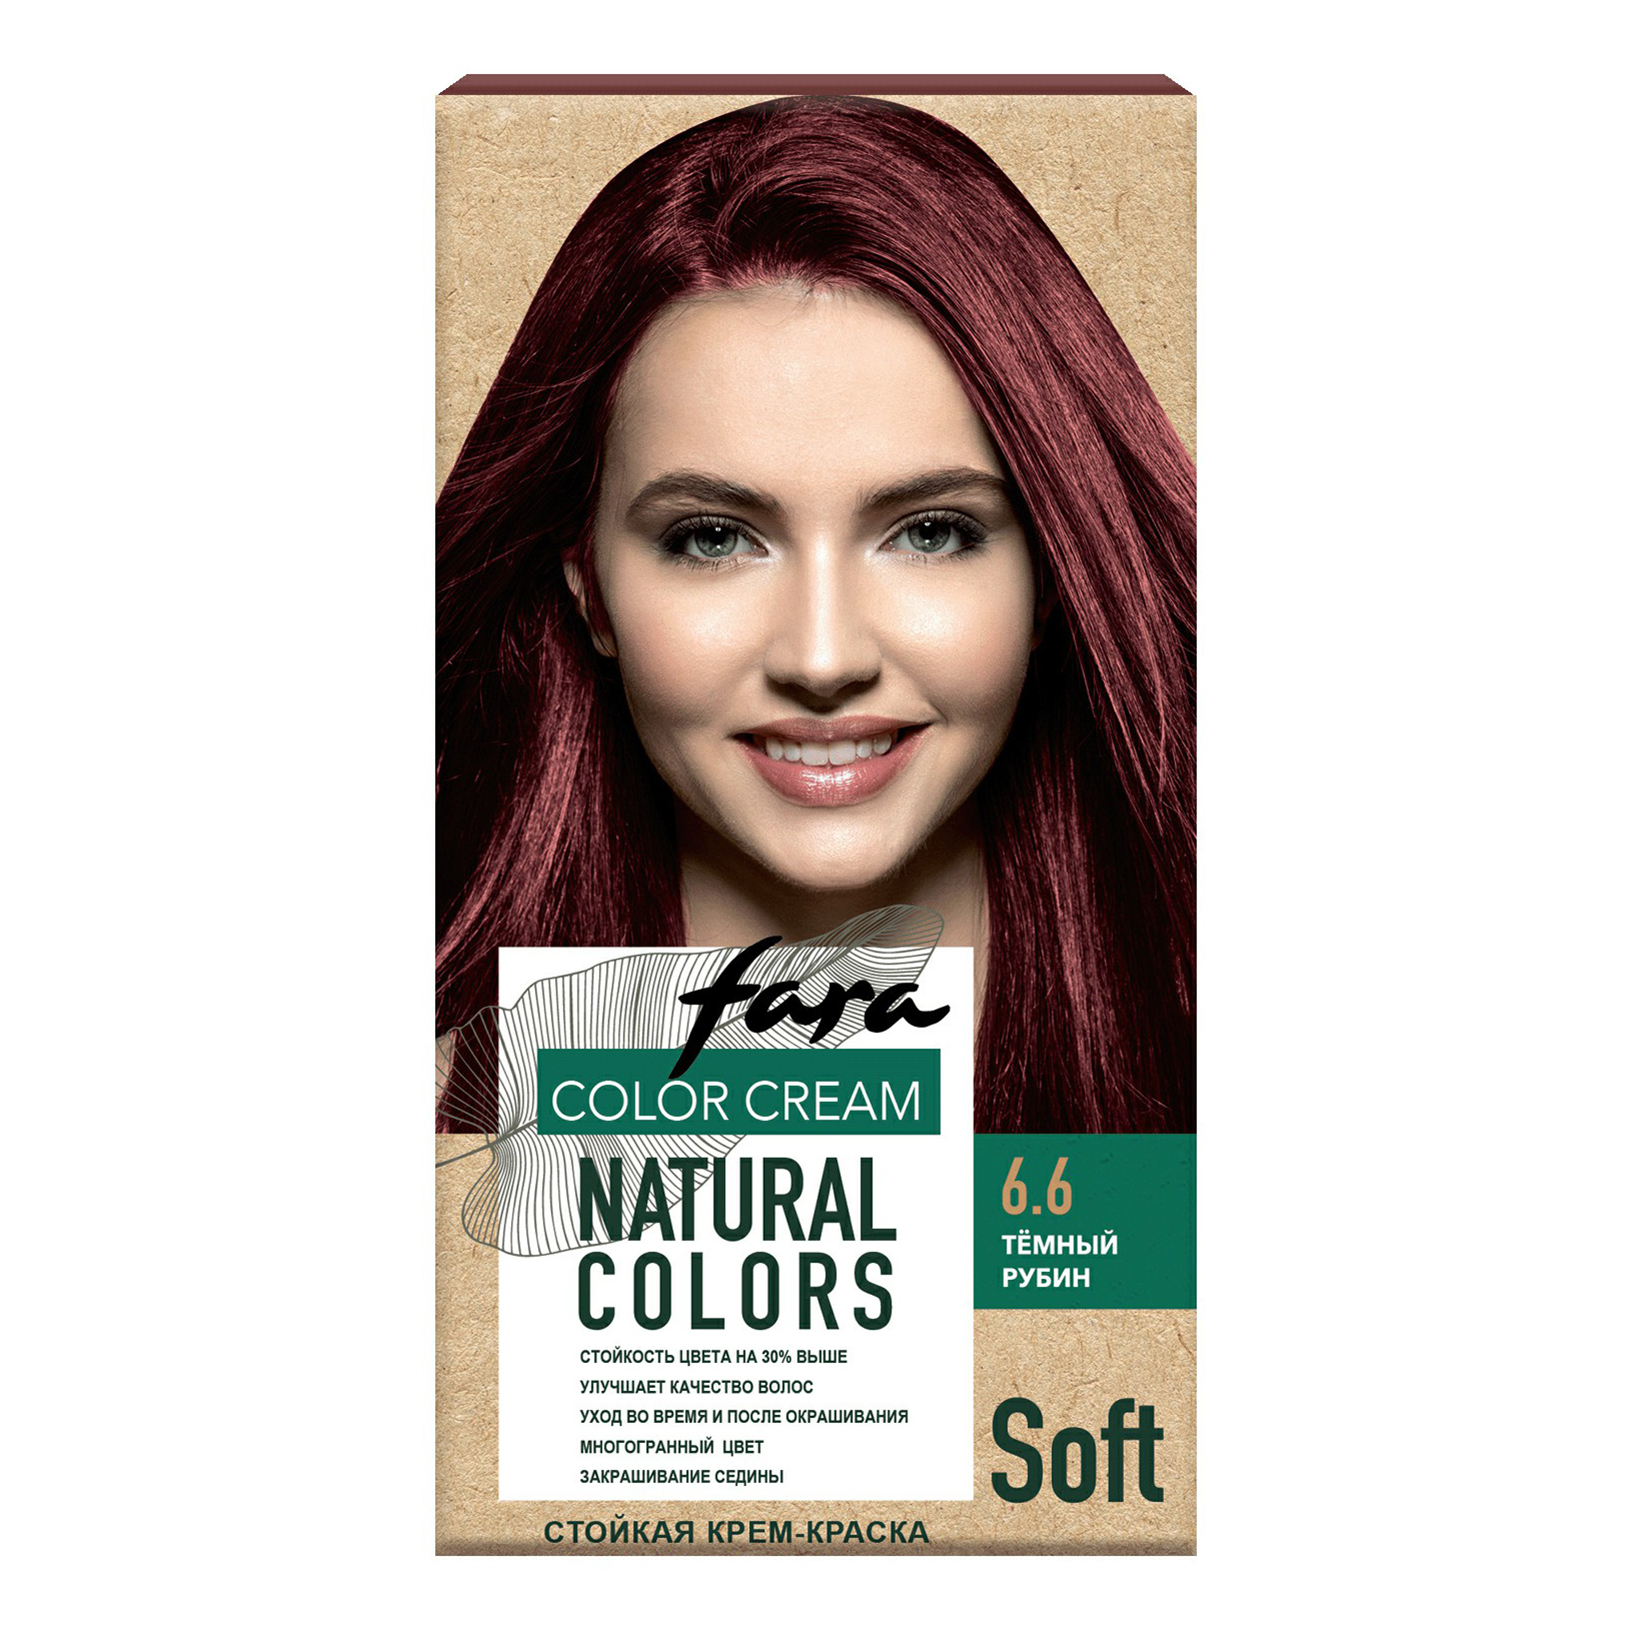 Крем-краска для волос Fara Natural Colors Soft 324 Темный рубин 150 мл